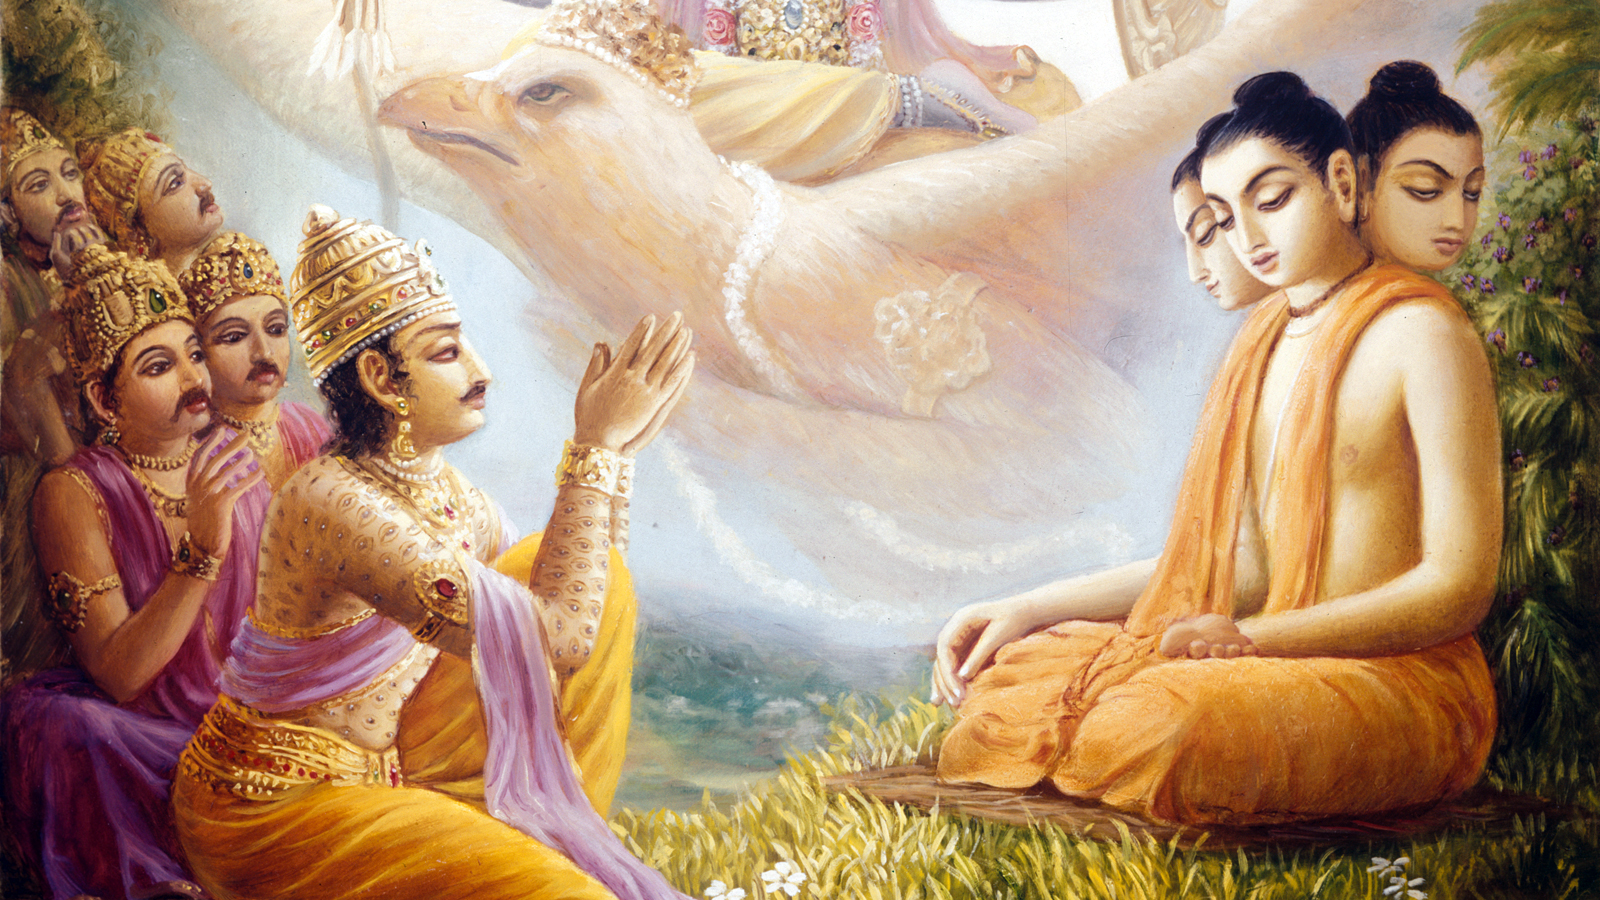 Vishwarupa teaching Narayana Kavacha to Indra